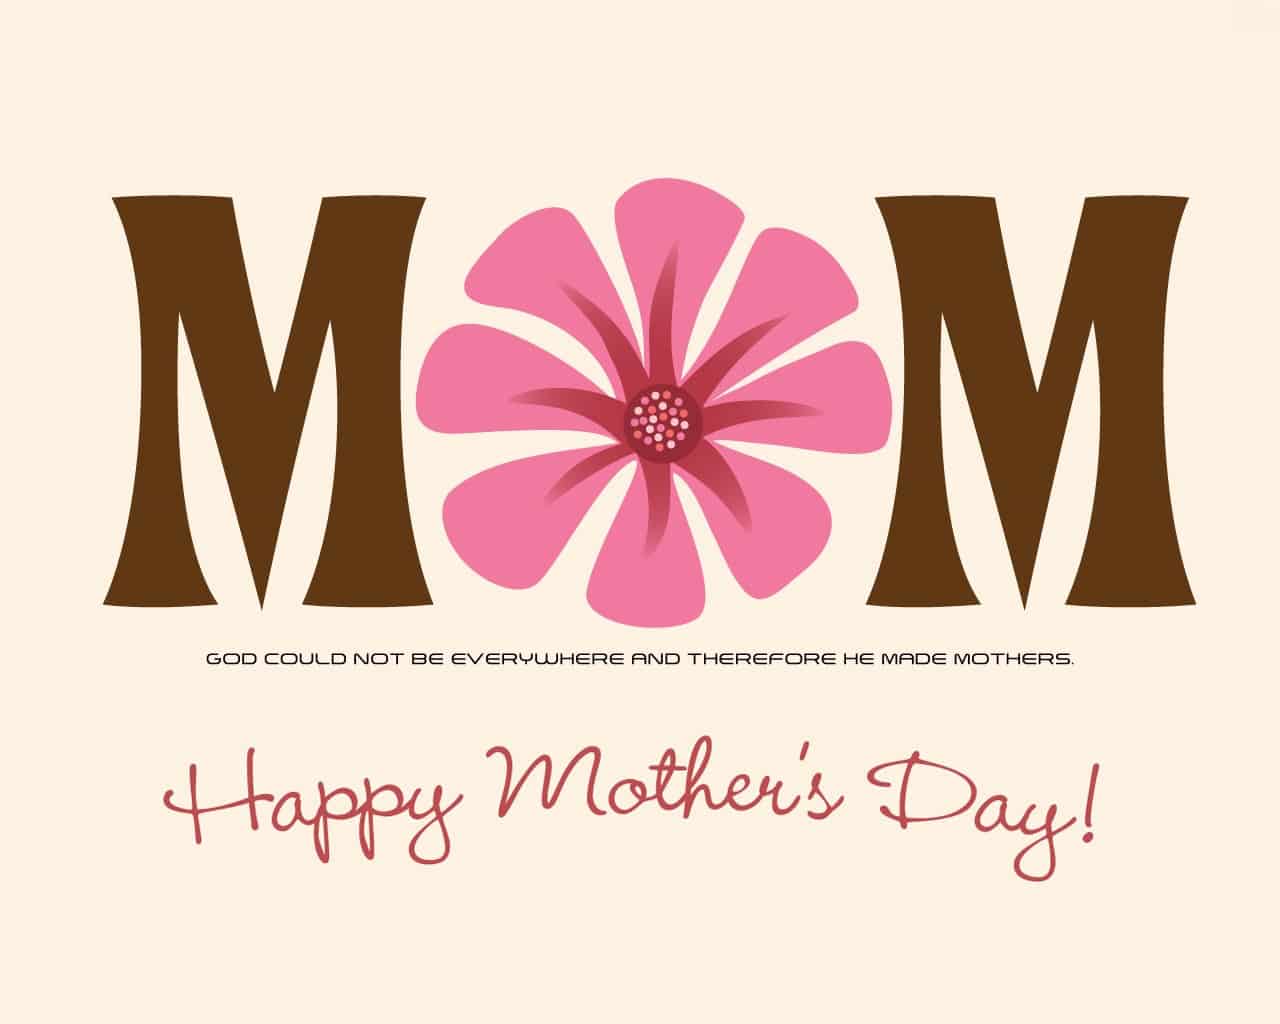 صور وكروت وبطاقات معايدة لعيد الأم - Happy Mother's Day 2020 209